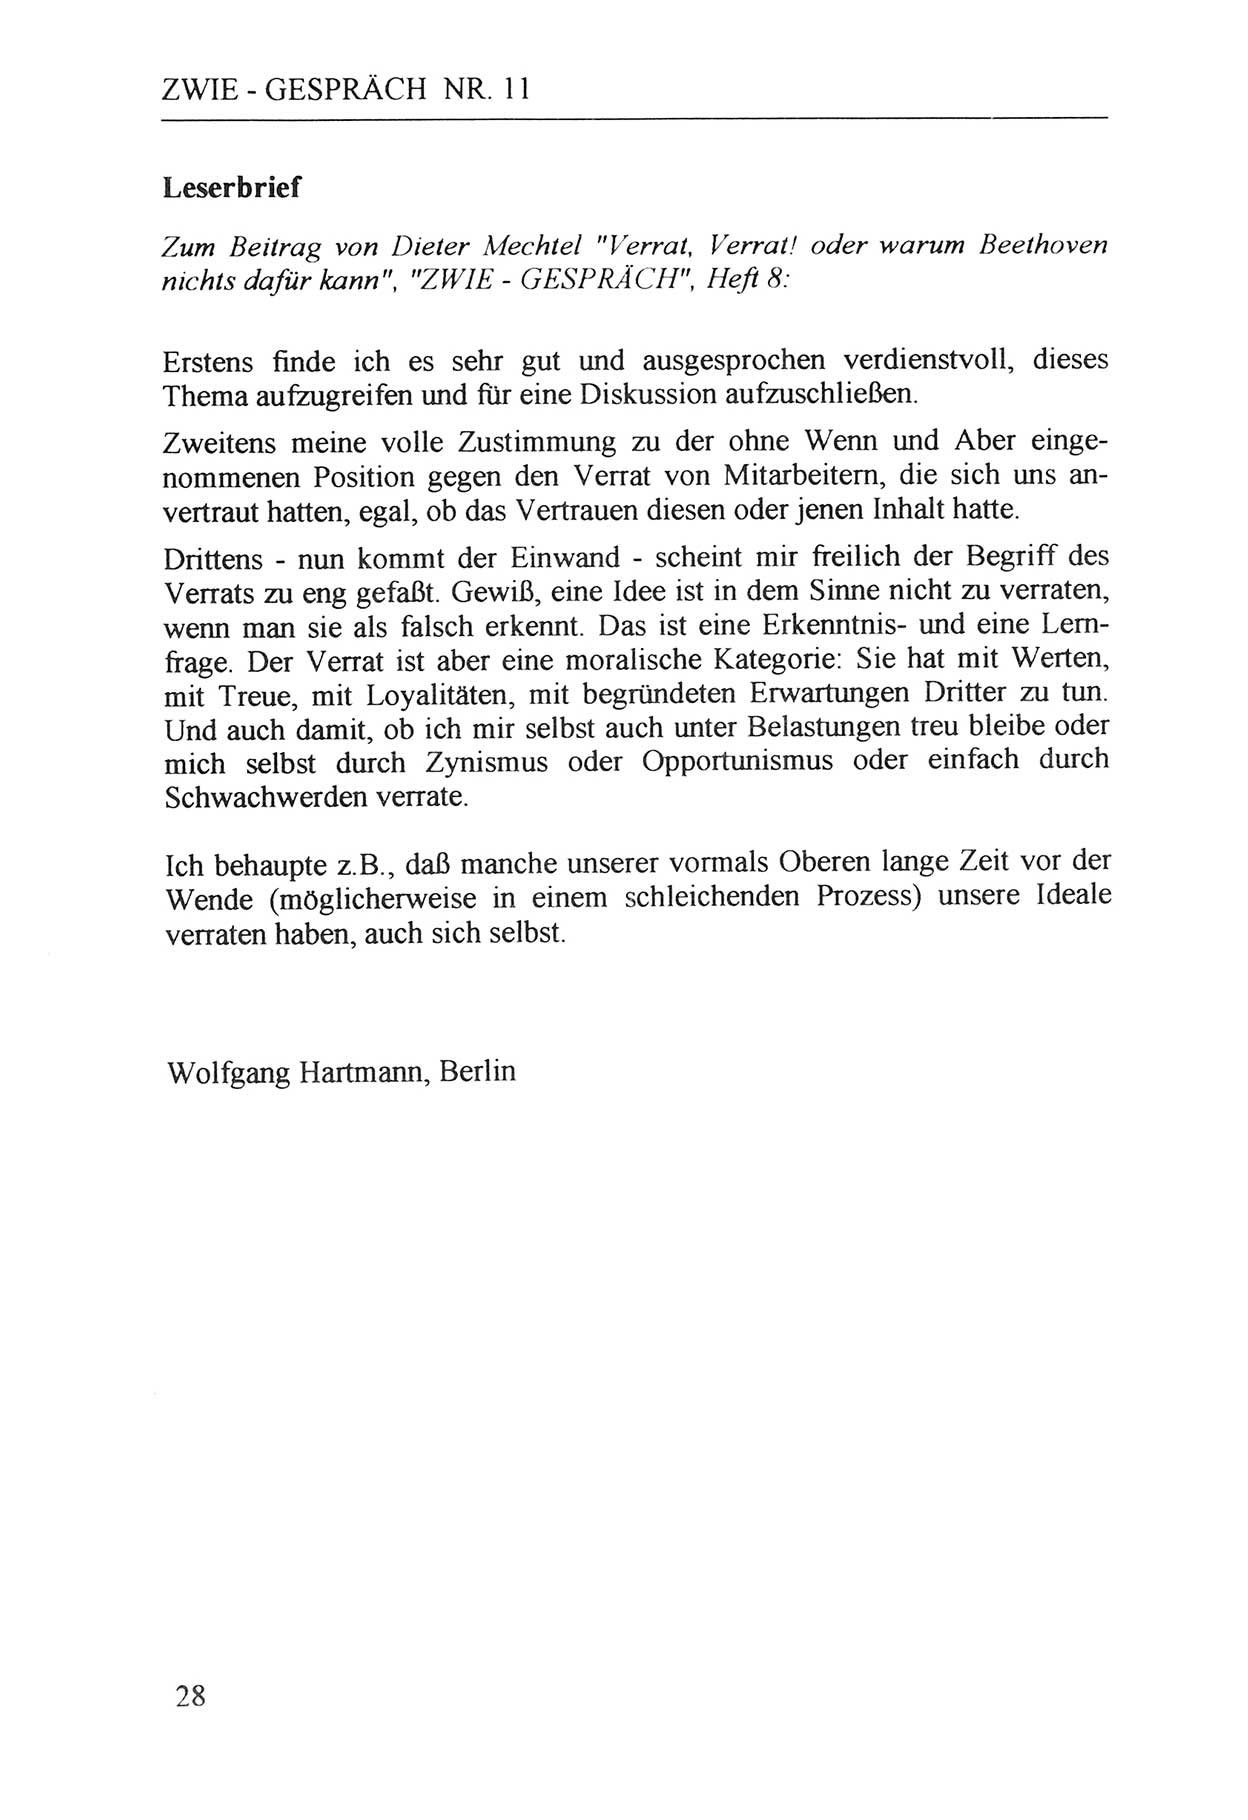 Zwie-Gespräch, Beiträge zur Aufarbeitung der Staatssicherheits-Vergangenheit [Deutsche Demokratische Republik (DDR)], Ausgabe Nr. 11, Berlin 1992, Seite 28 (Zwie-Gespr. Ausg. 11 1992, S. 28)